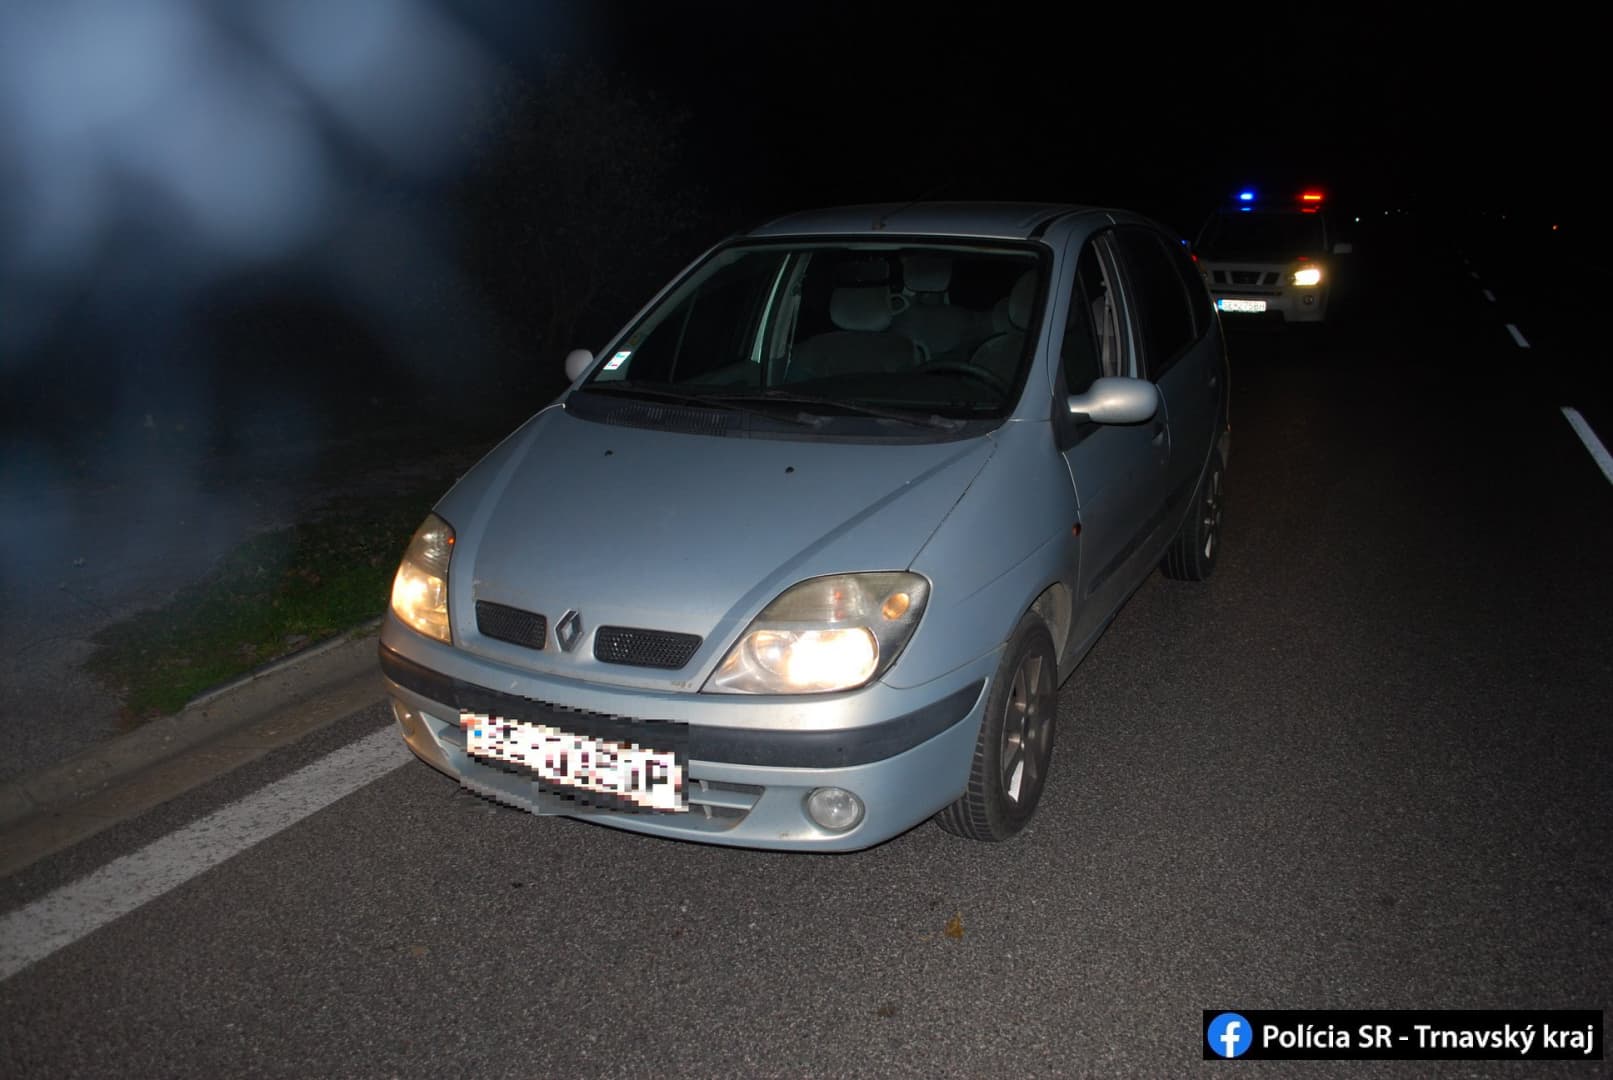 Találomra megállítottak egy autóst a rendőrök – 15 évet kaphat a sofőr azért, amit a kocsiban találtak (FOTÓK)